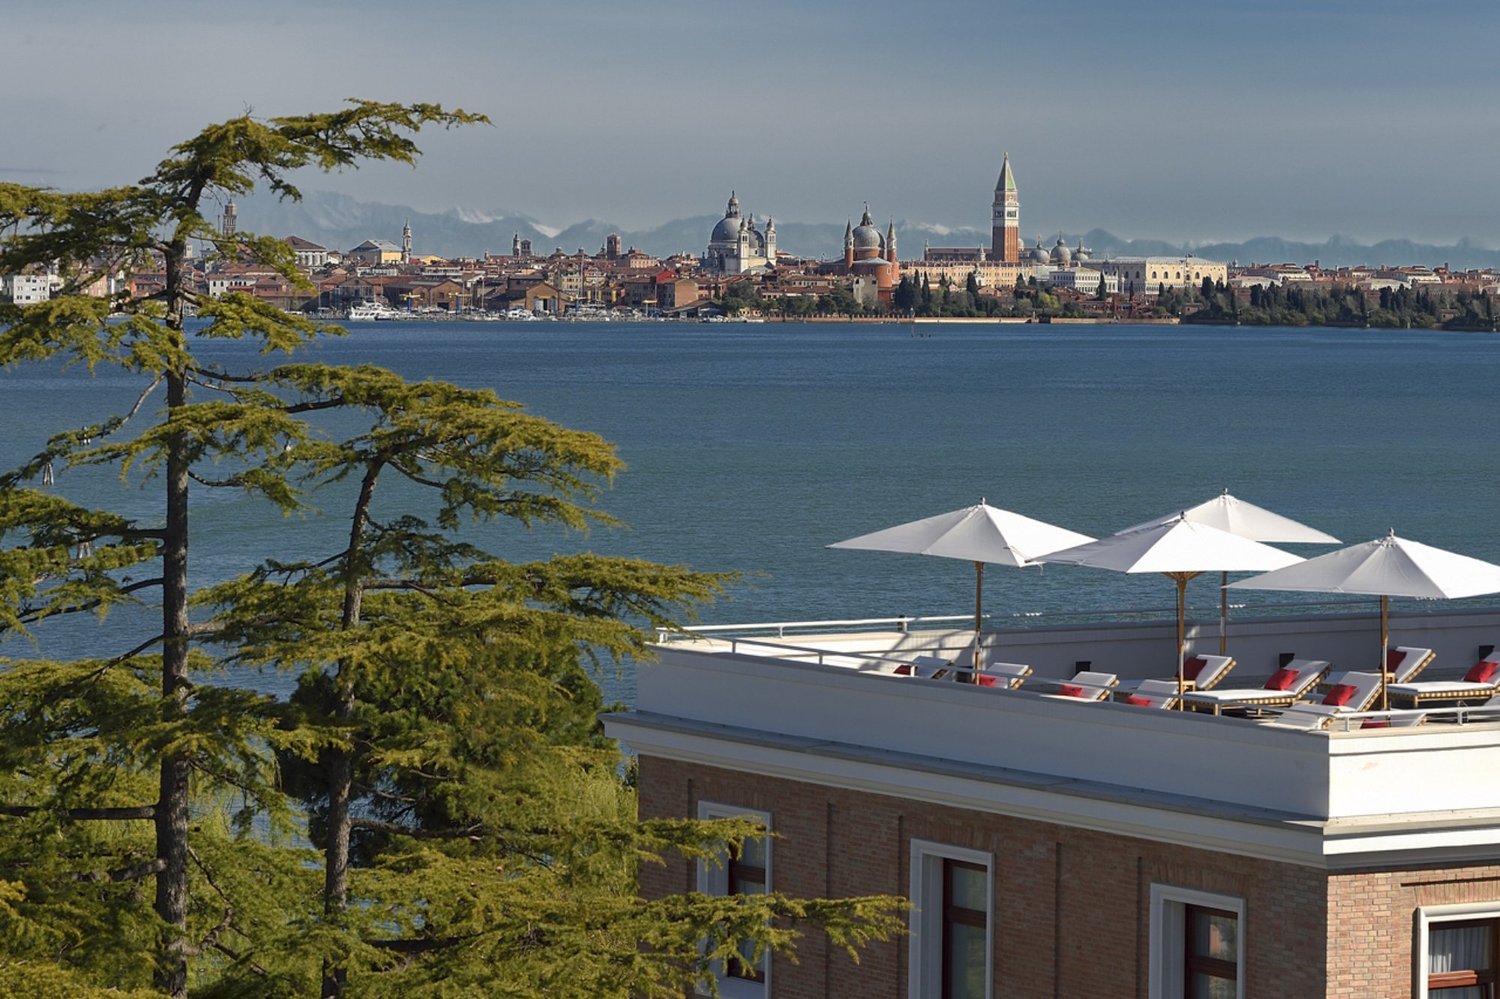 JW Marriott Venice Resort & Spa, Matteo Thun & Partners | © JW Marriott Venice Resort & Spa